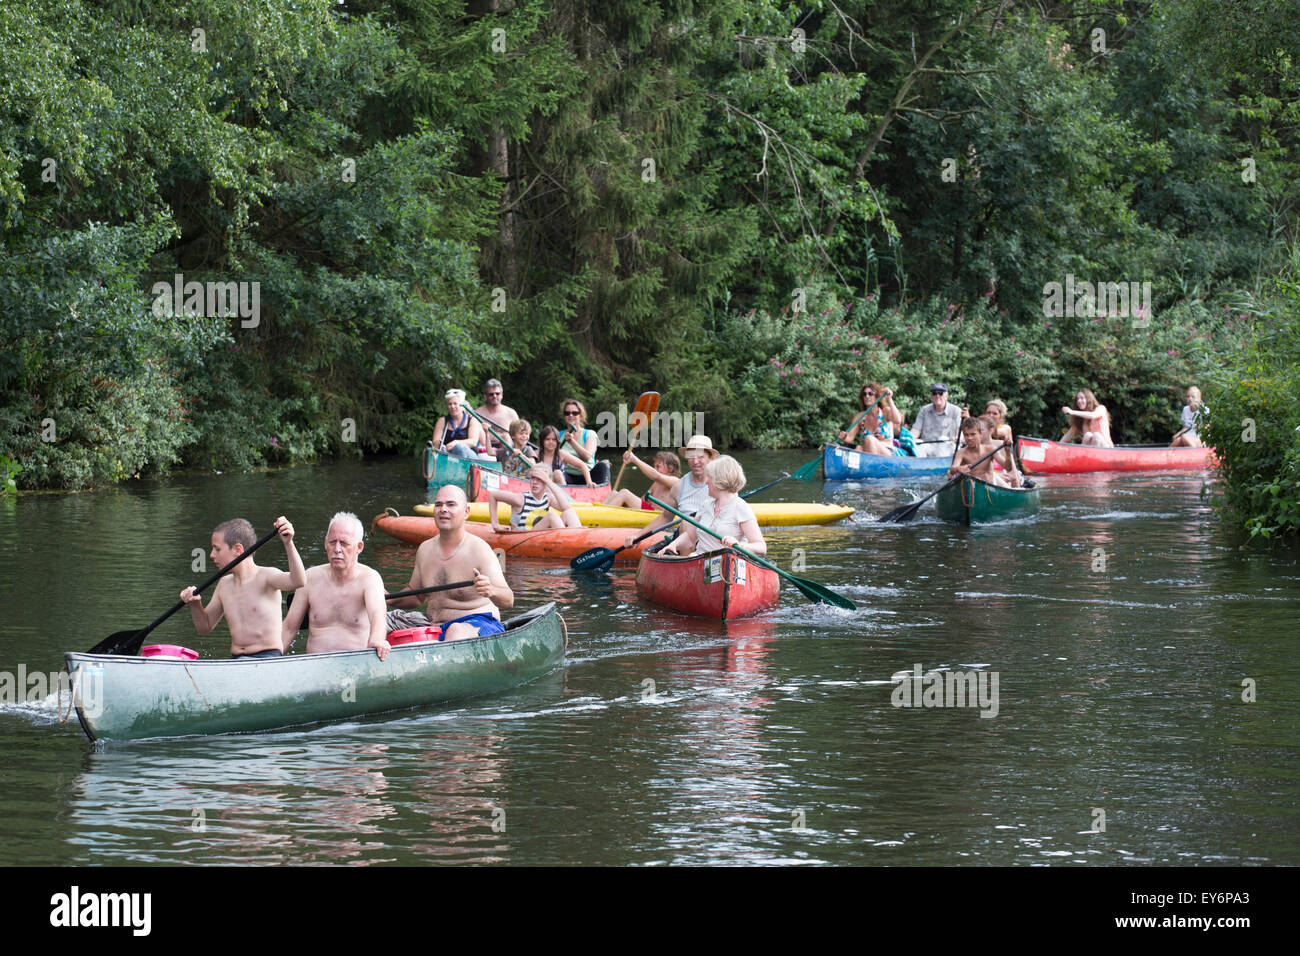 Kanu-Touristen vorbei am Fluss "Dommel" in den Niederlanden Stockfoto